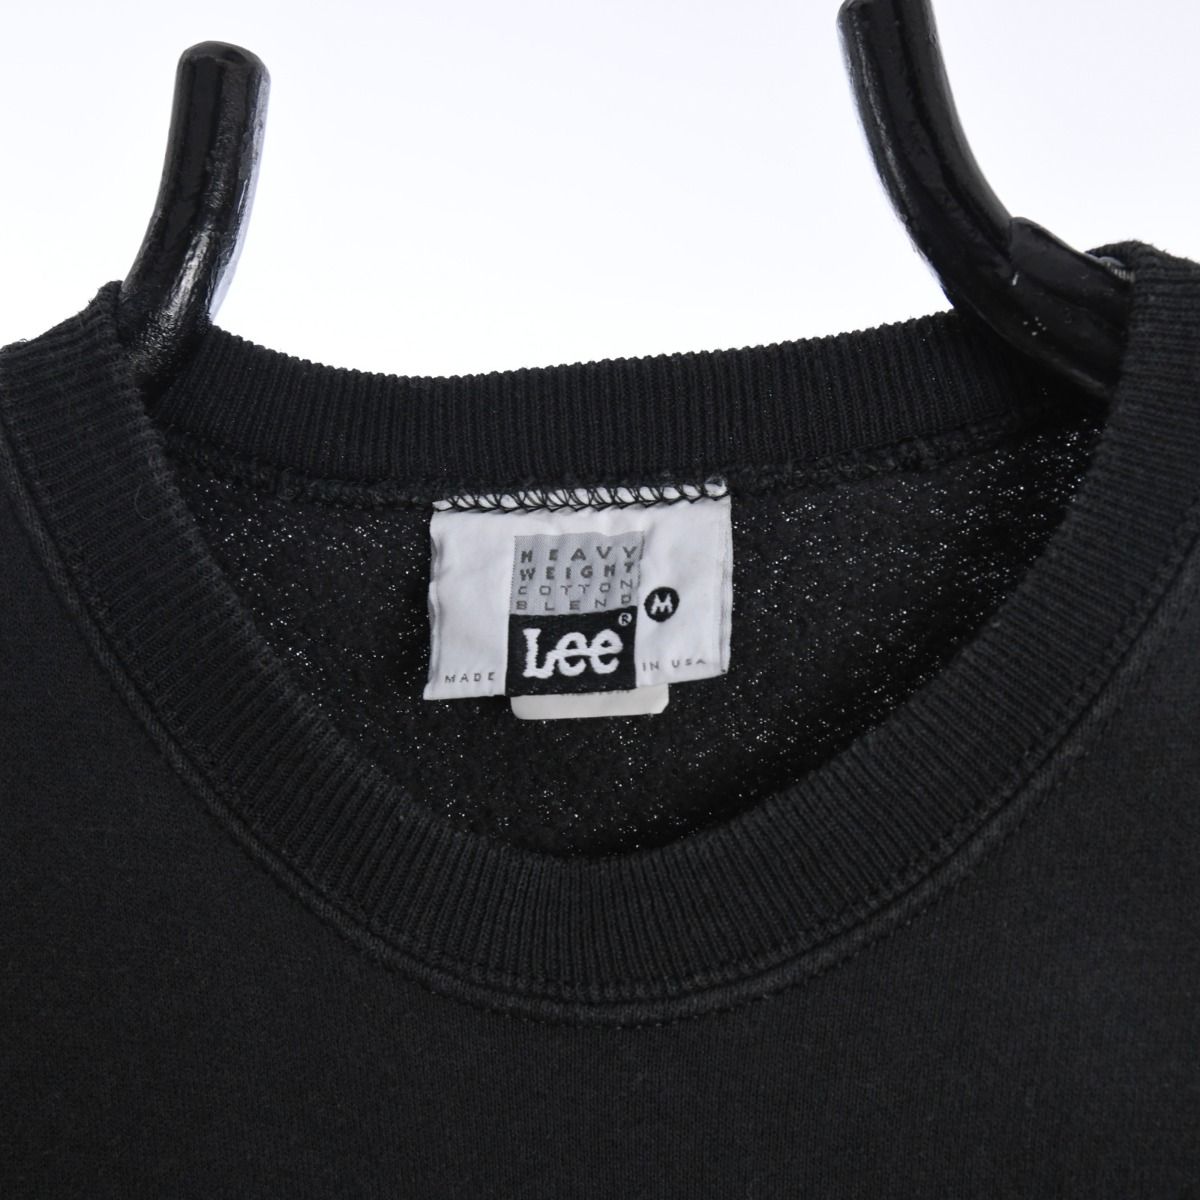 Lee 1990s Blank Black Sweatshirt